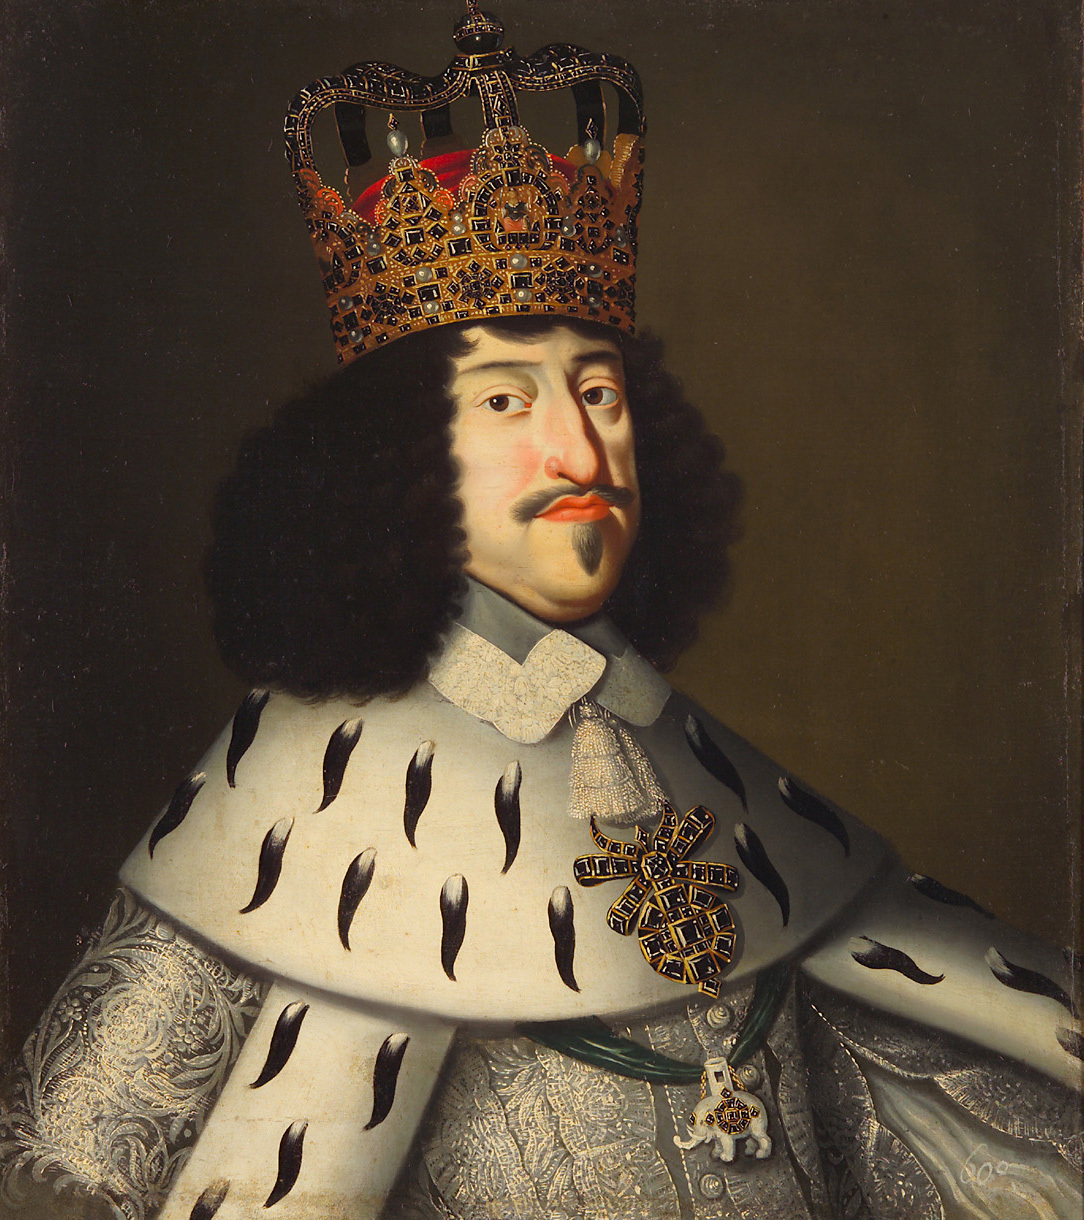 Dänisch | König Friedrich III. (1609-1670) von Dänemark und Norwegen im Krönungsgewand, Brustbild | Displayed motifs: Crown, Clothing, Human face, Person, Miter, Halo, Thorn crown, 